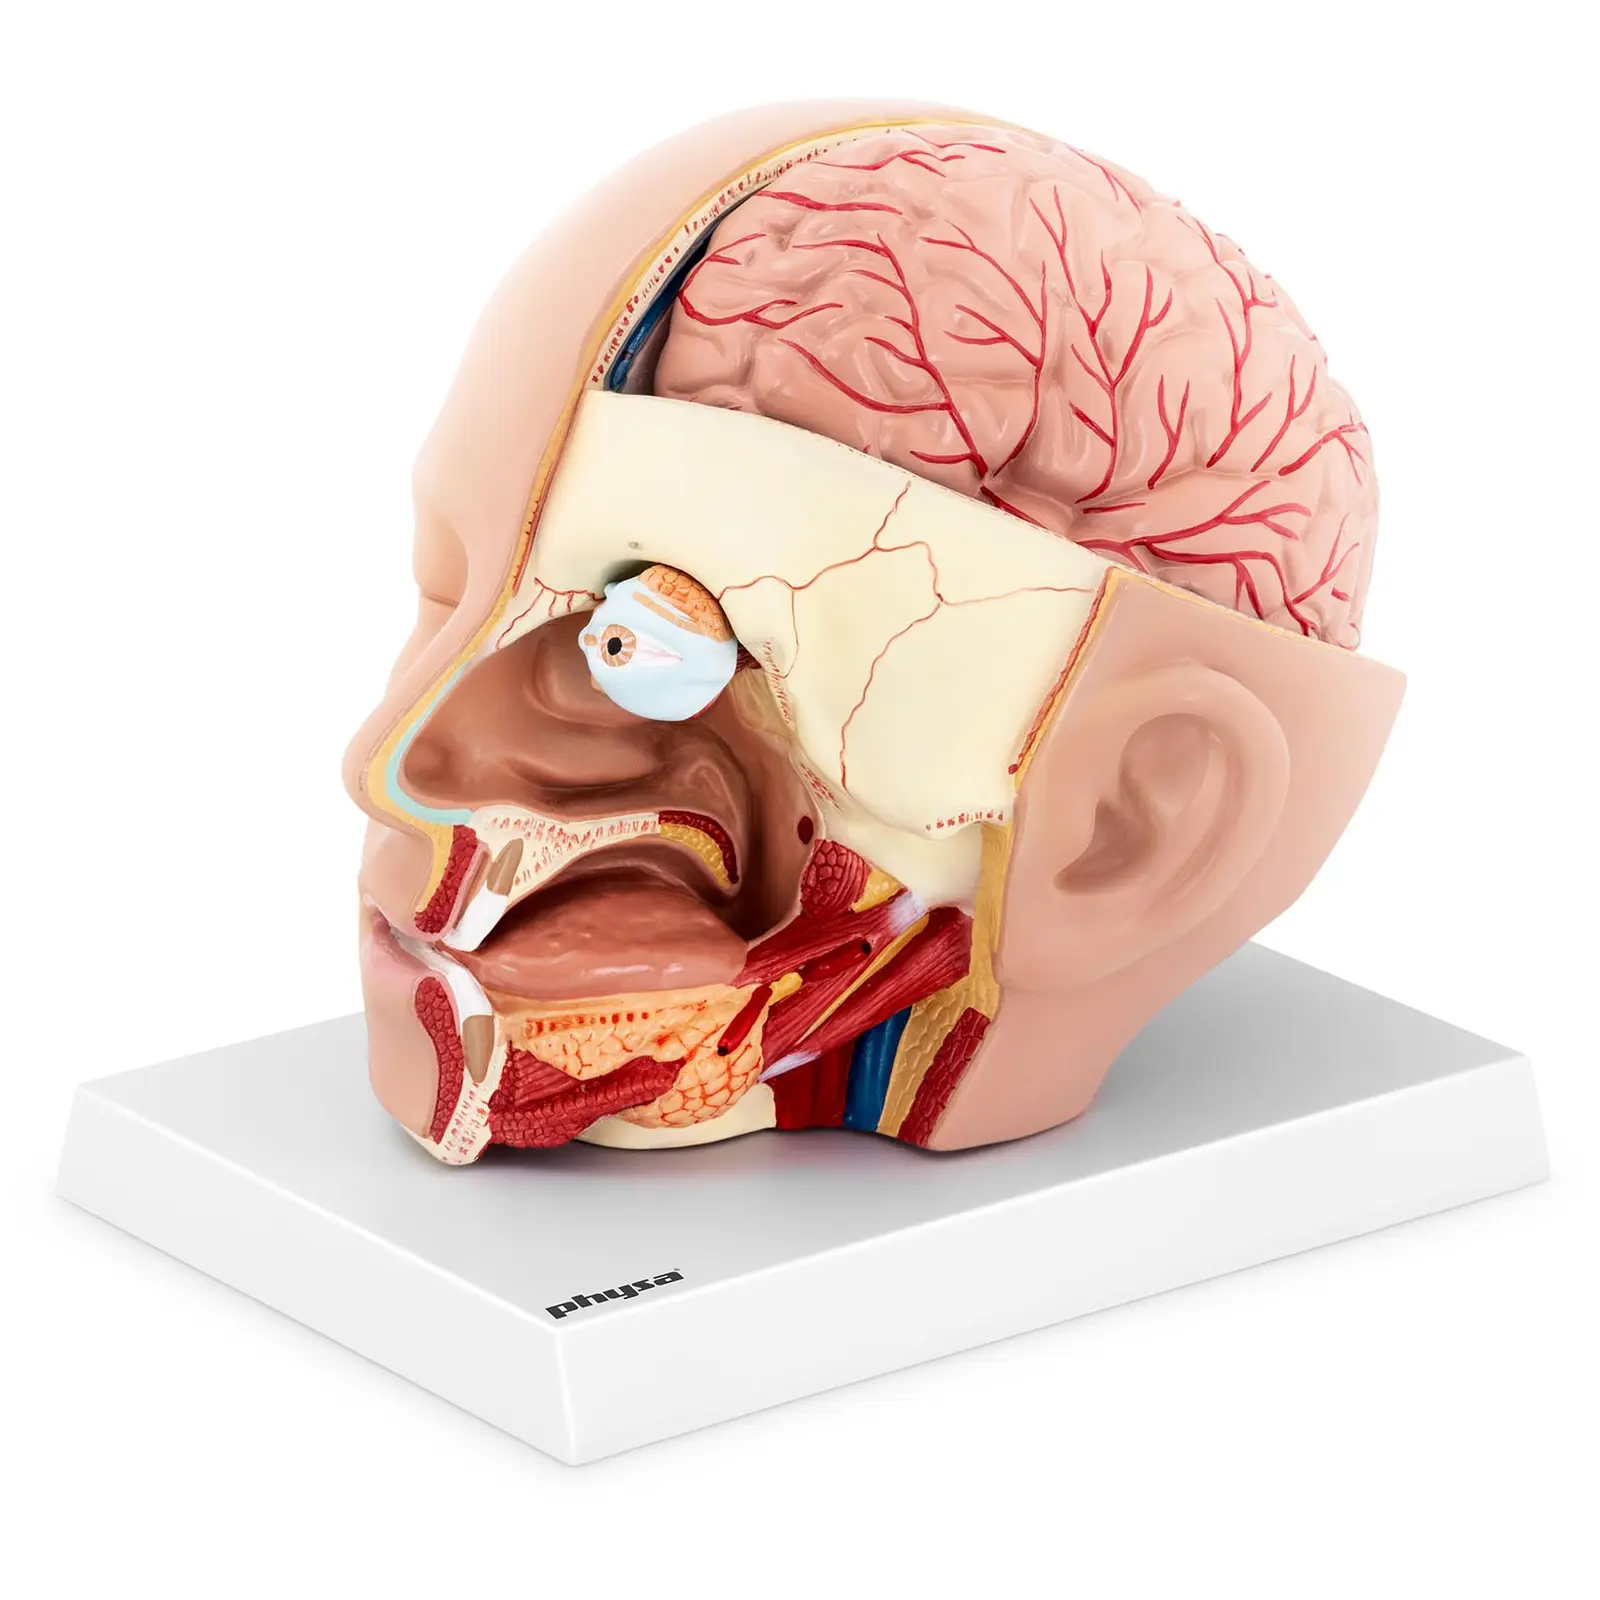 Głowa i mózg - model anatomiczny